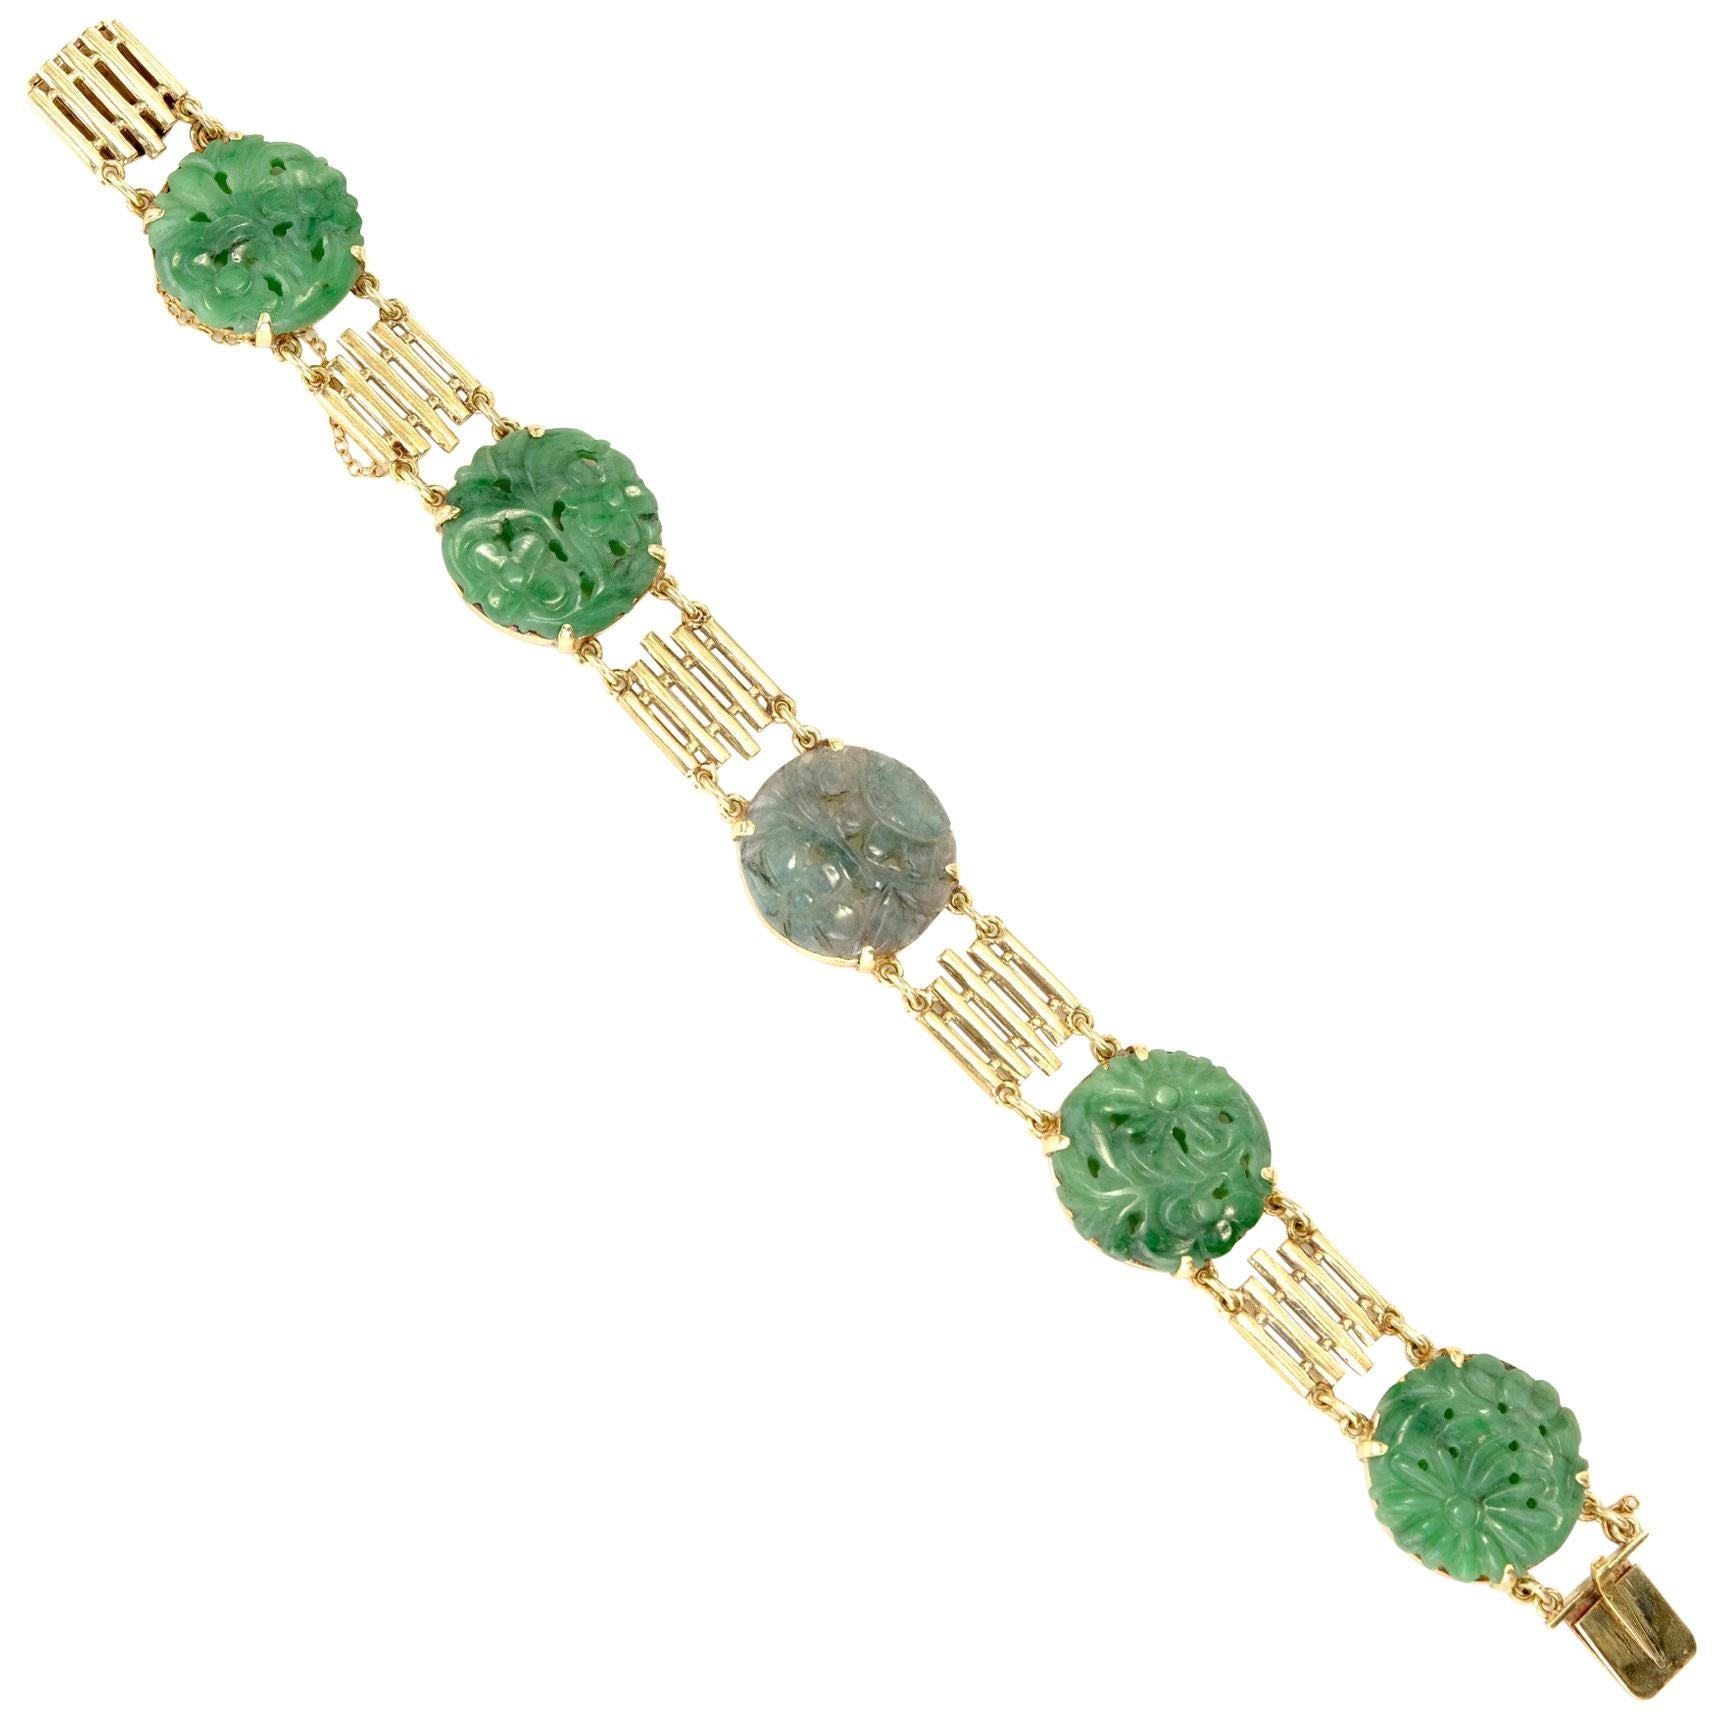 Bracelet sculpté style art déco, en or, jade et jadéite naturelle, certifié GIA